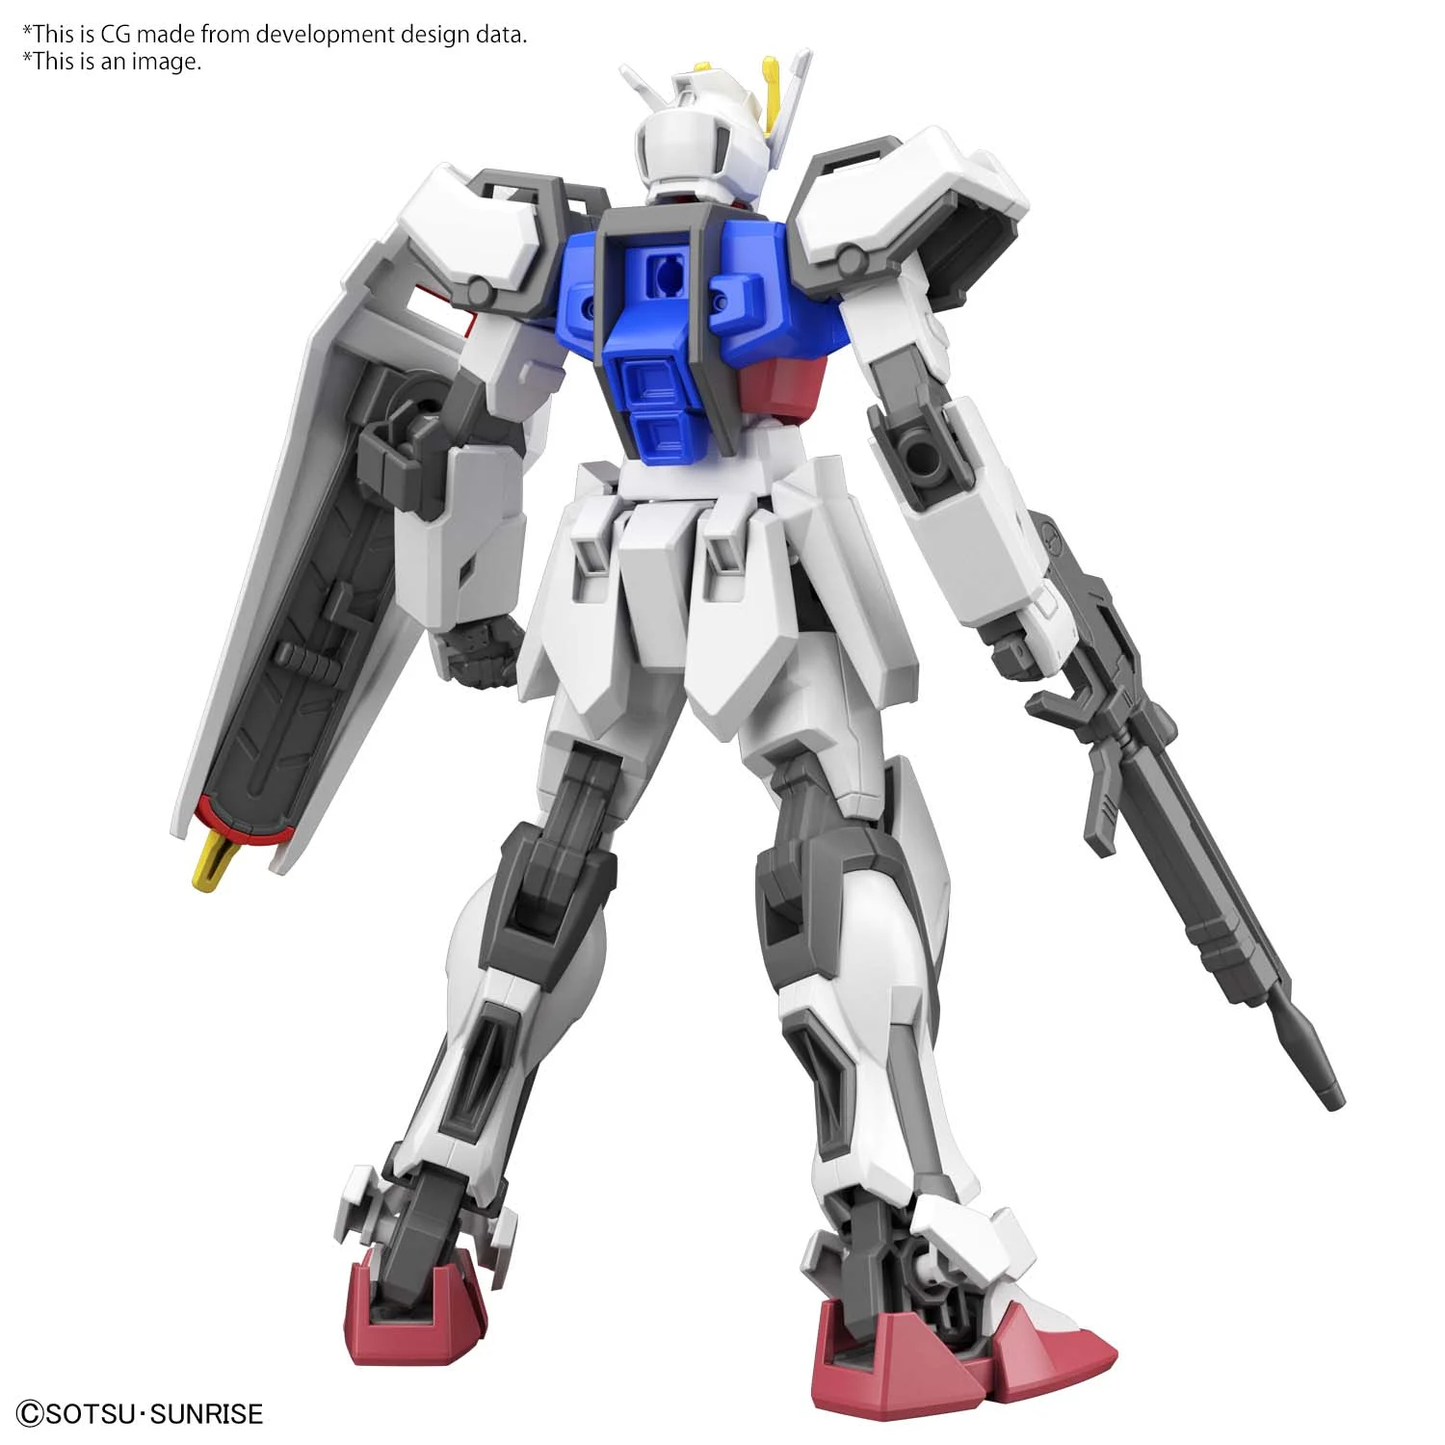 GUNDAM - EG 1/144 - Strike Gundam